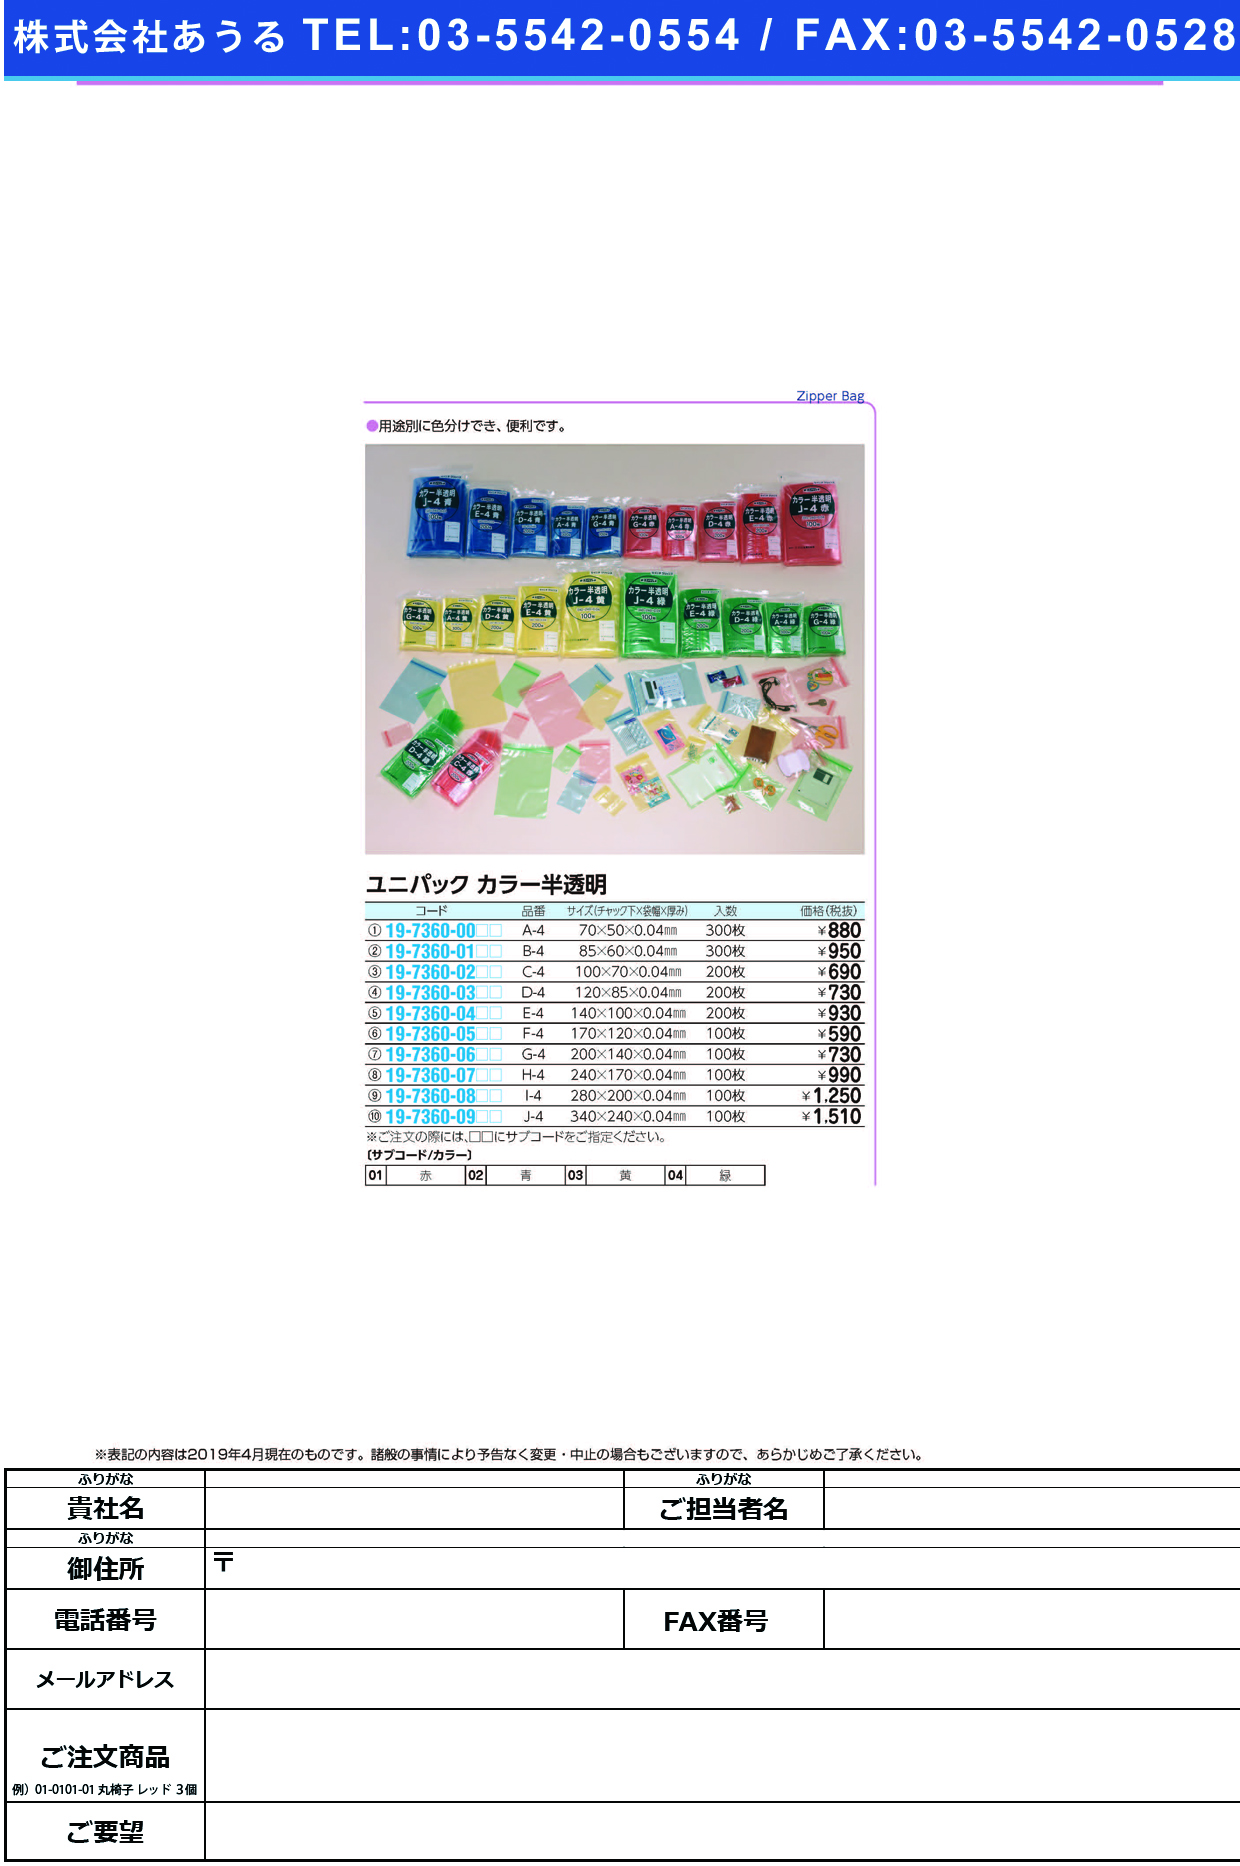 (19-7360-05)ユニパックカラー半透明 F-4(100ﾏｲｲﾘ) ﾕﾆﾊﾟｯｸｶﾗｰﾊﾝﾄｳﾒｲ 赤【1袋単位】【2019年カタログ商品】